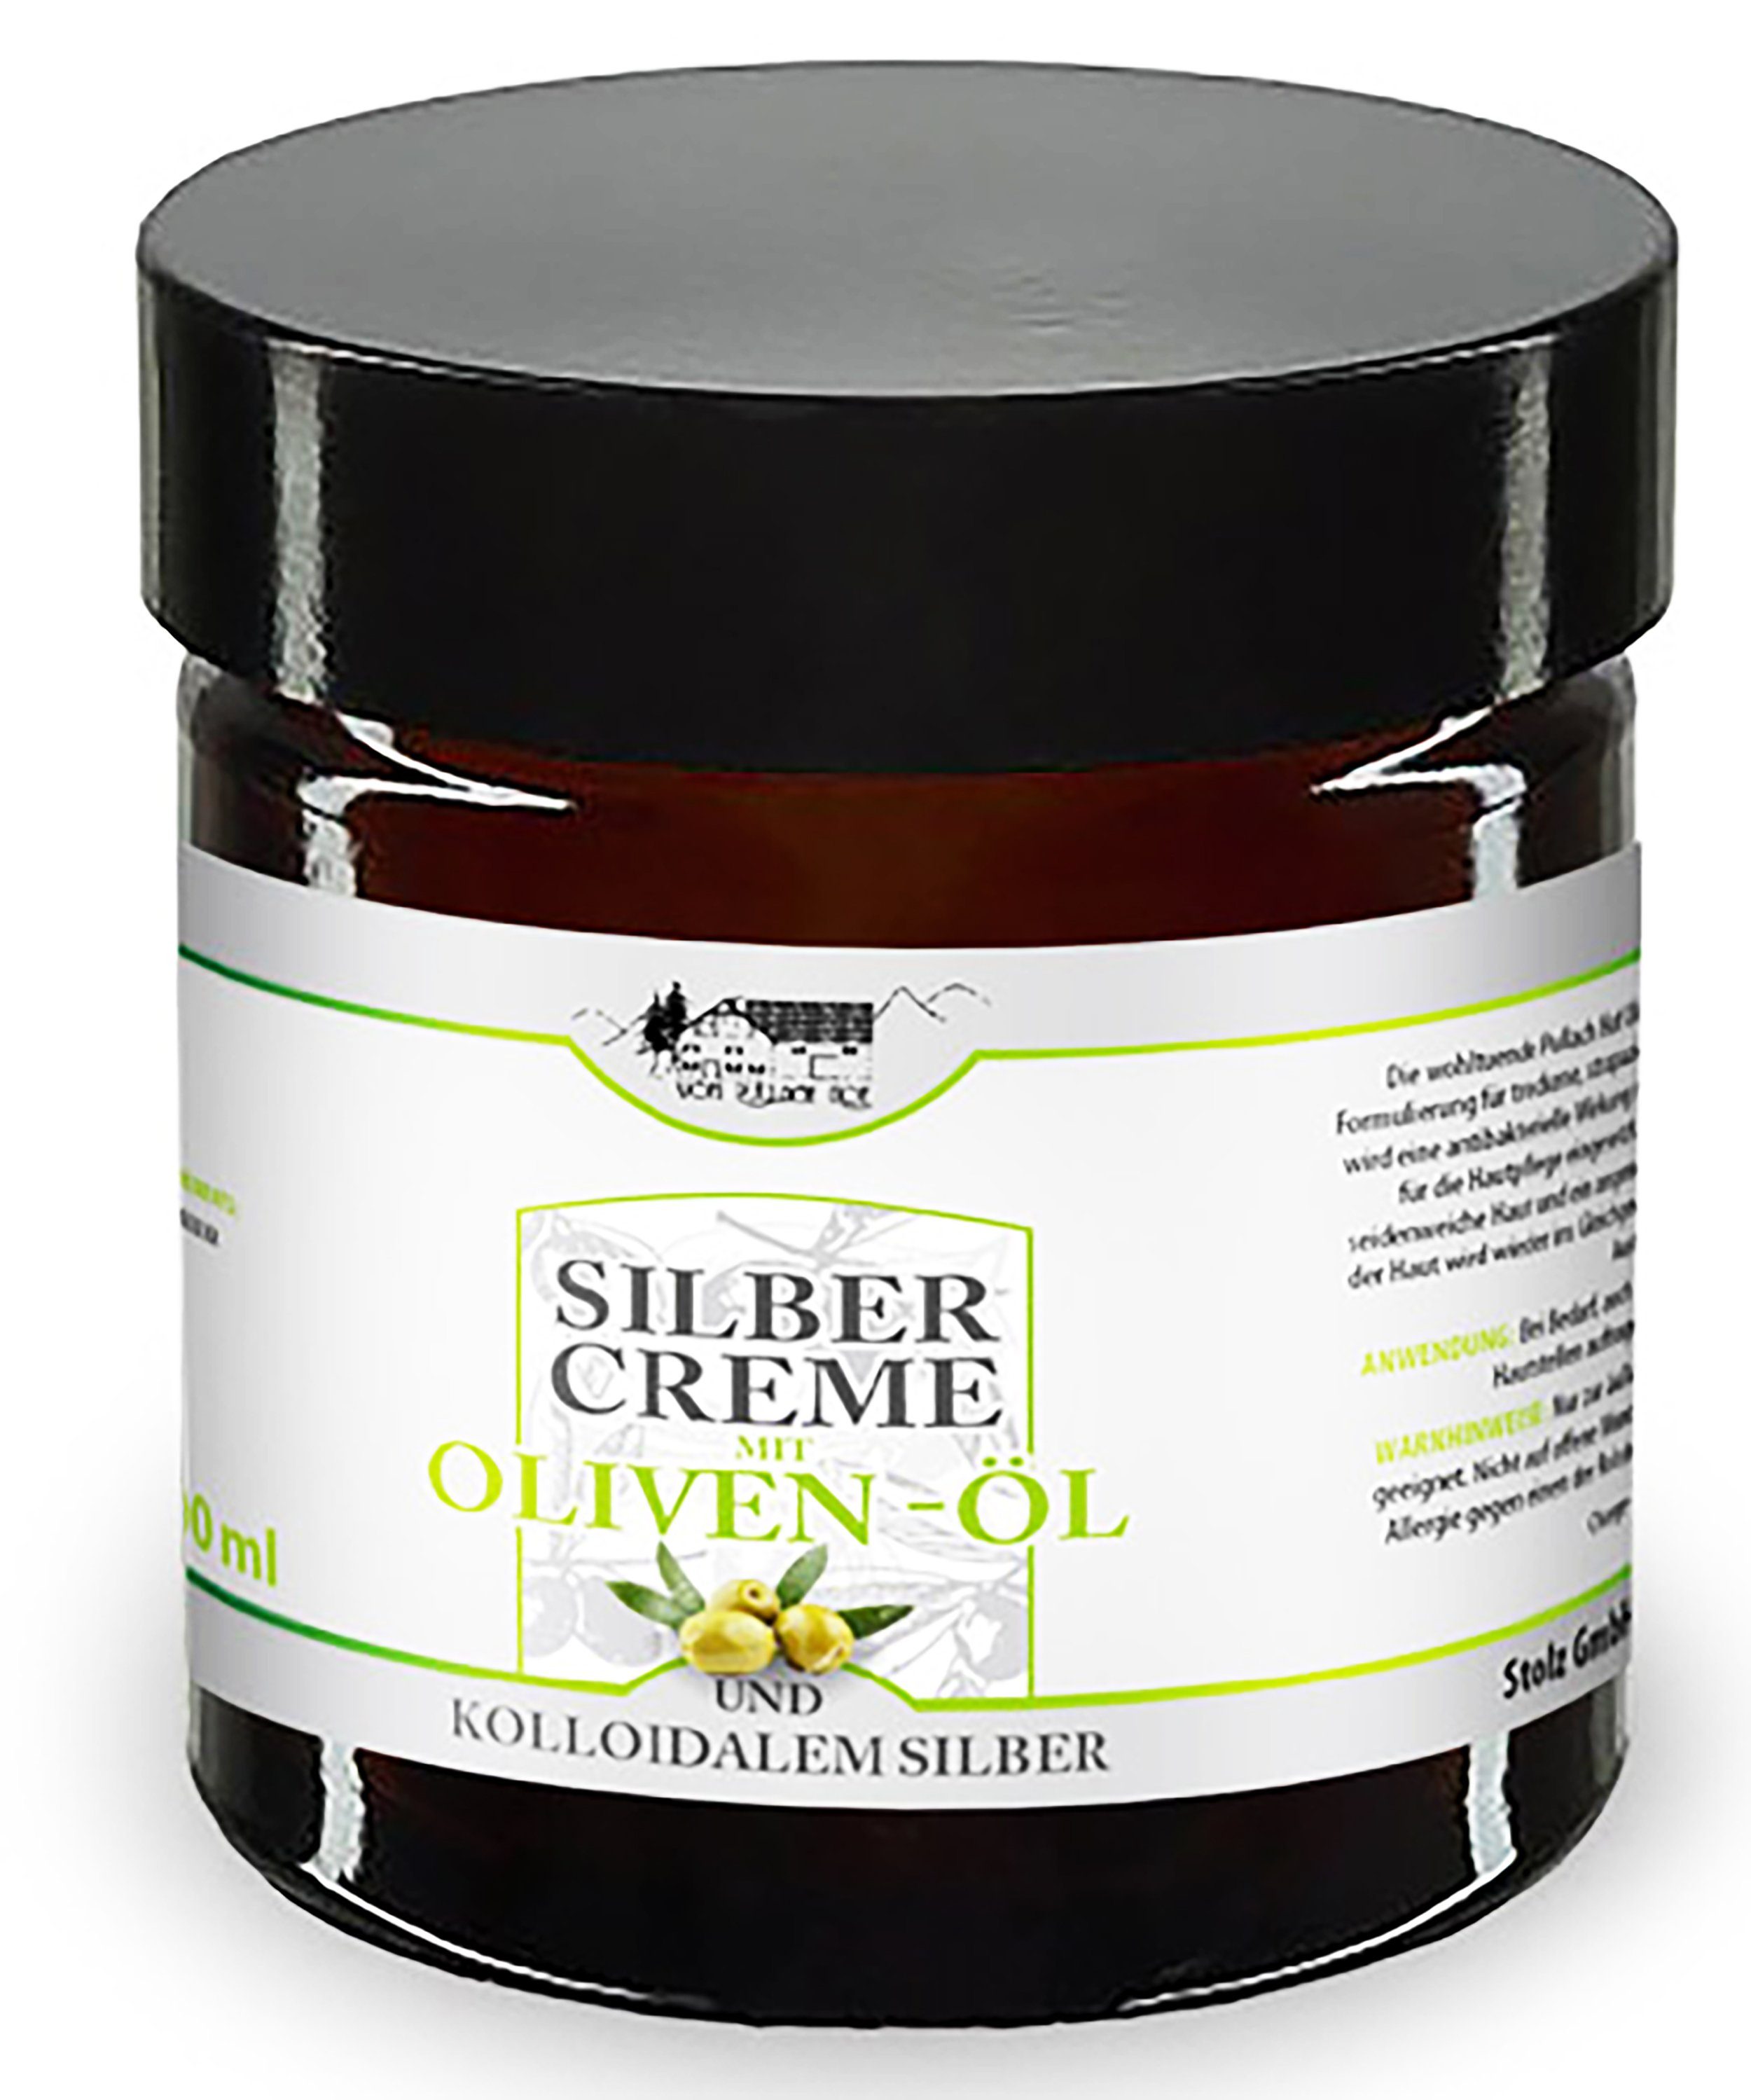 vom Pullach Hof Feuchtigkeitscreme SILBERCREME 100ml mit Oliven-Öl und Kolloidalem Silber Creme Balsam Hautcreme Hautplege Haut 72